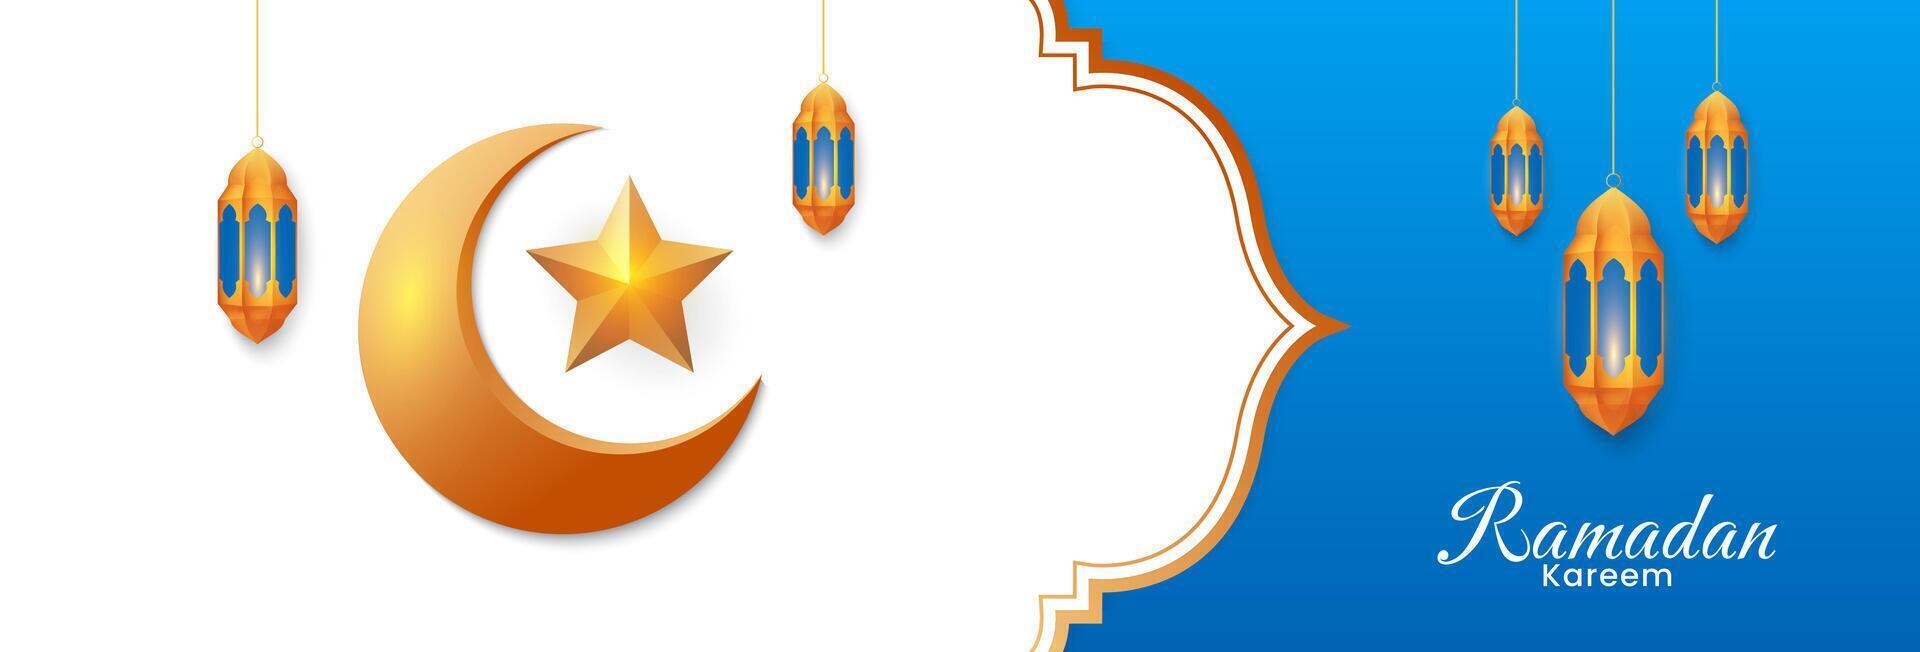 Islamitisch Ramadan kareem achtergrond ontwerp met gouden maan en lantaarn ornament. vector illustratie